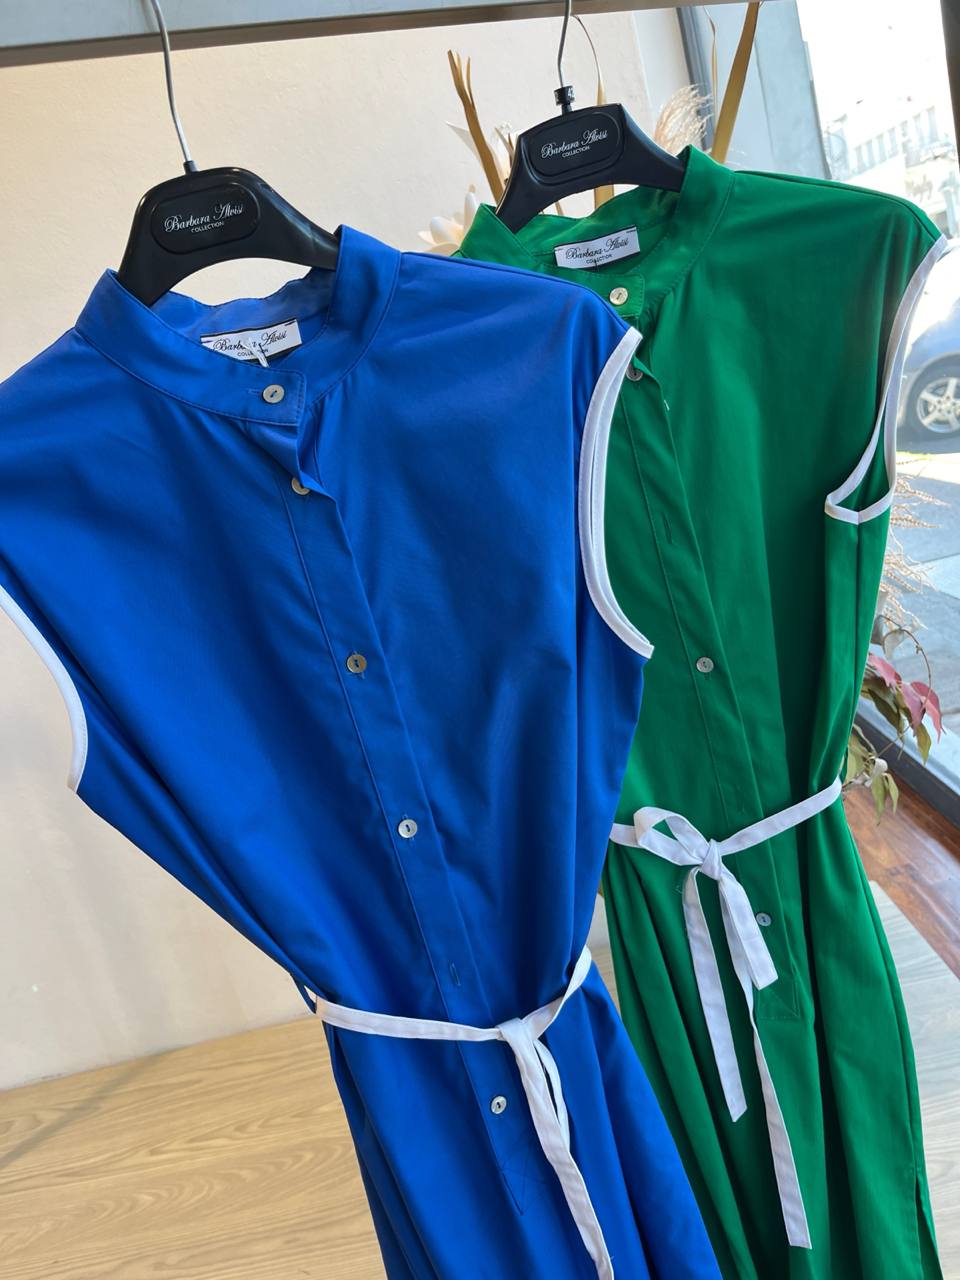 Итальянская одежда, бренд Derwix, арт. 73252326